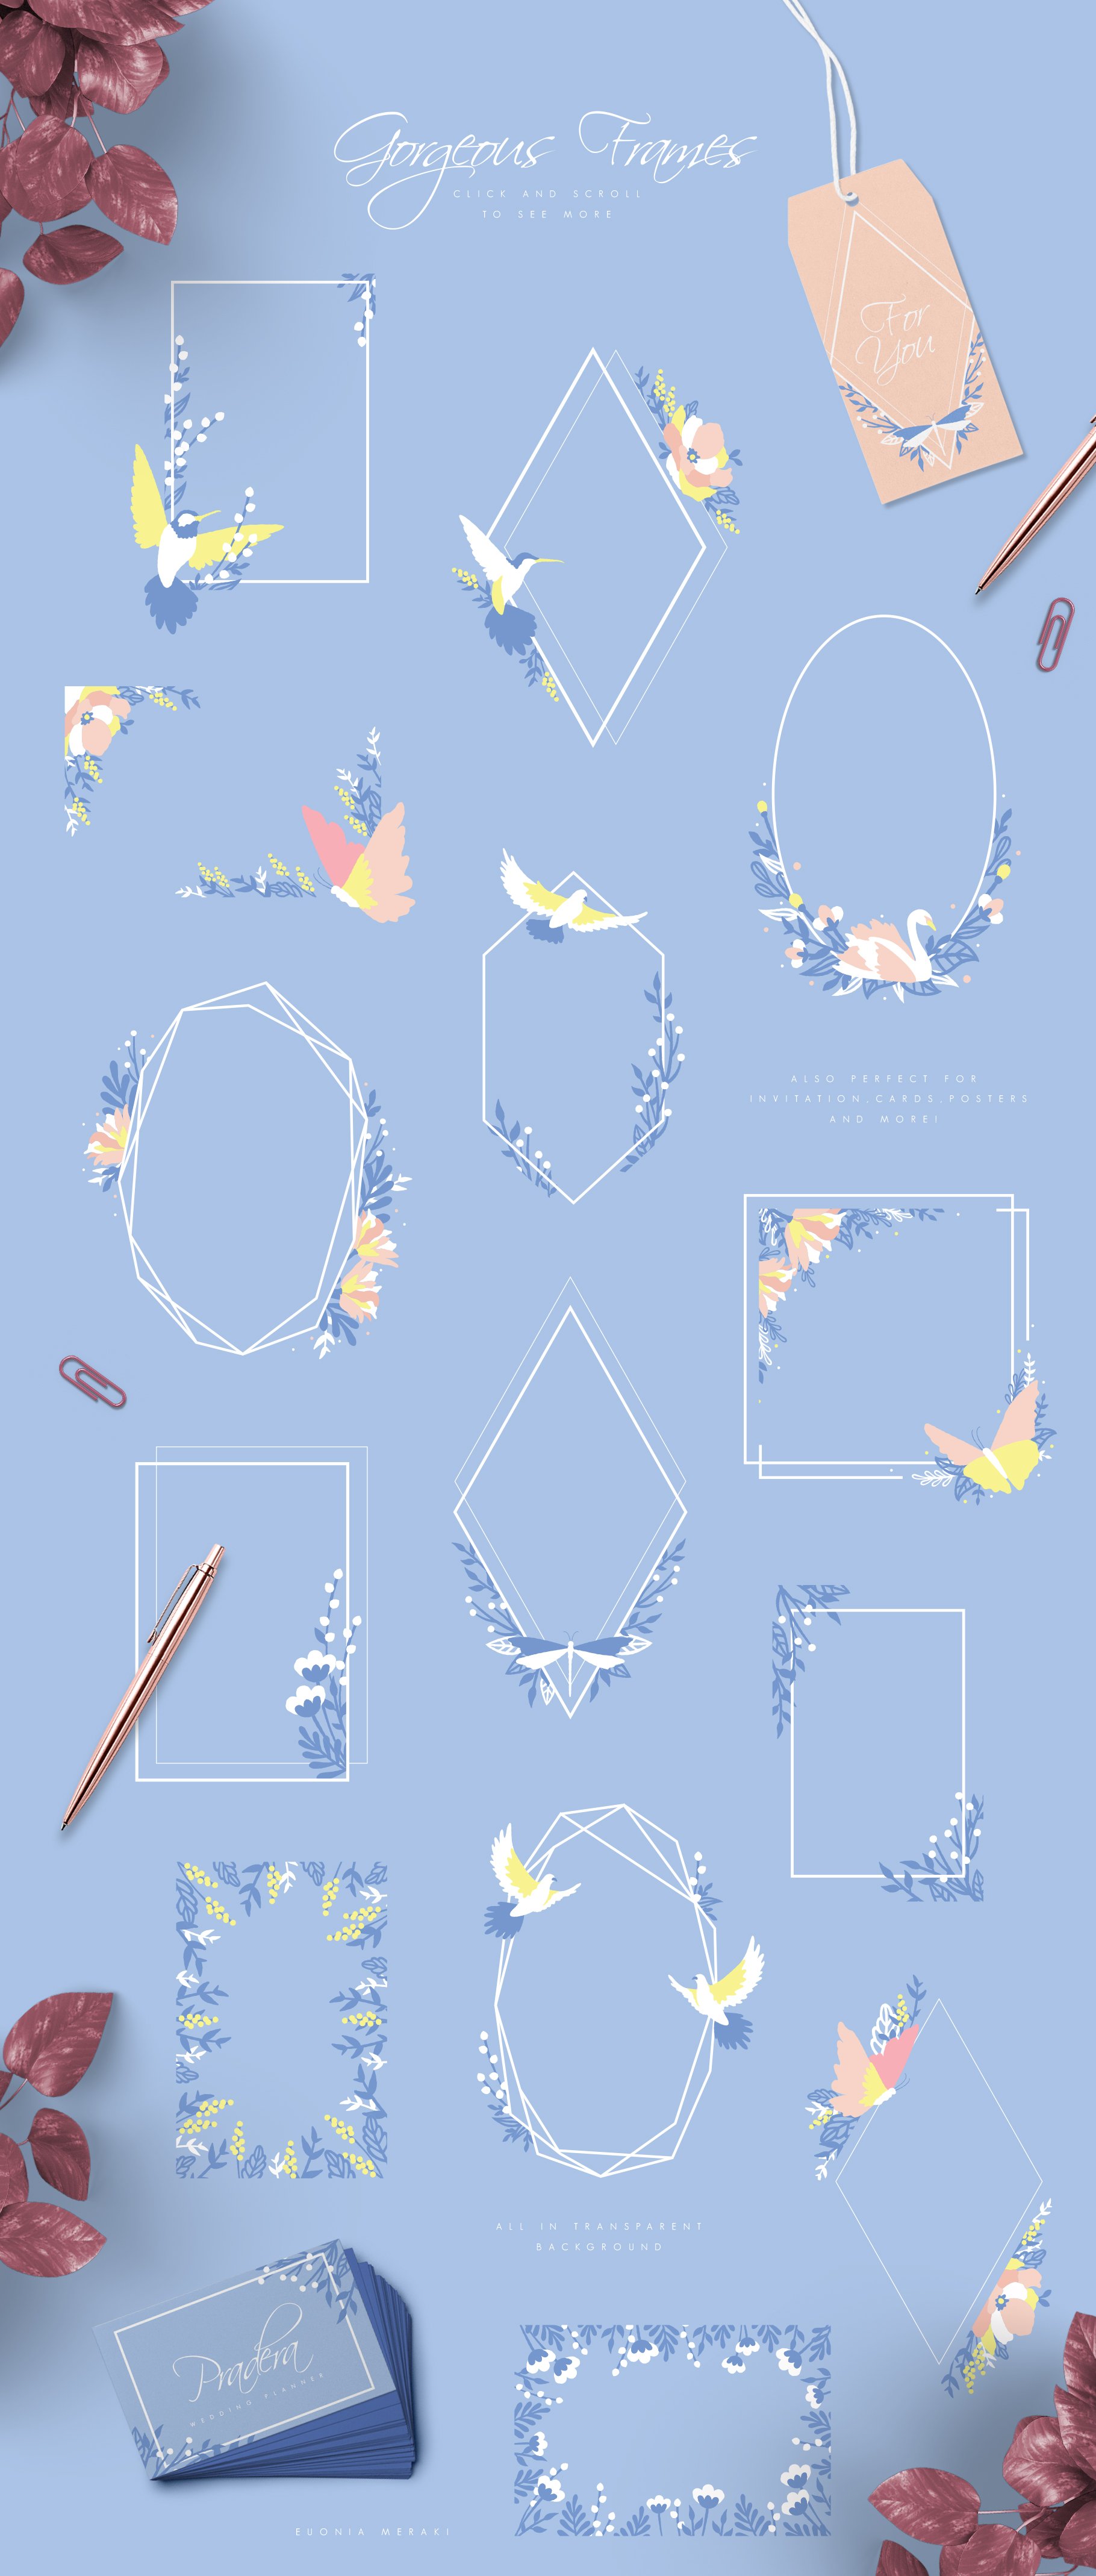 清新自然的春季蜂鸟花卉女性品牌设计素材合辑包 Confia